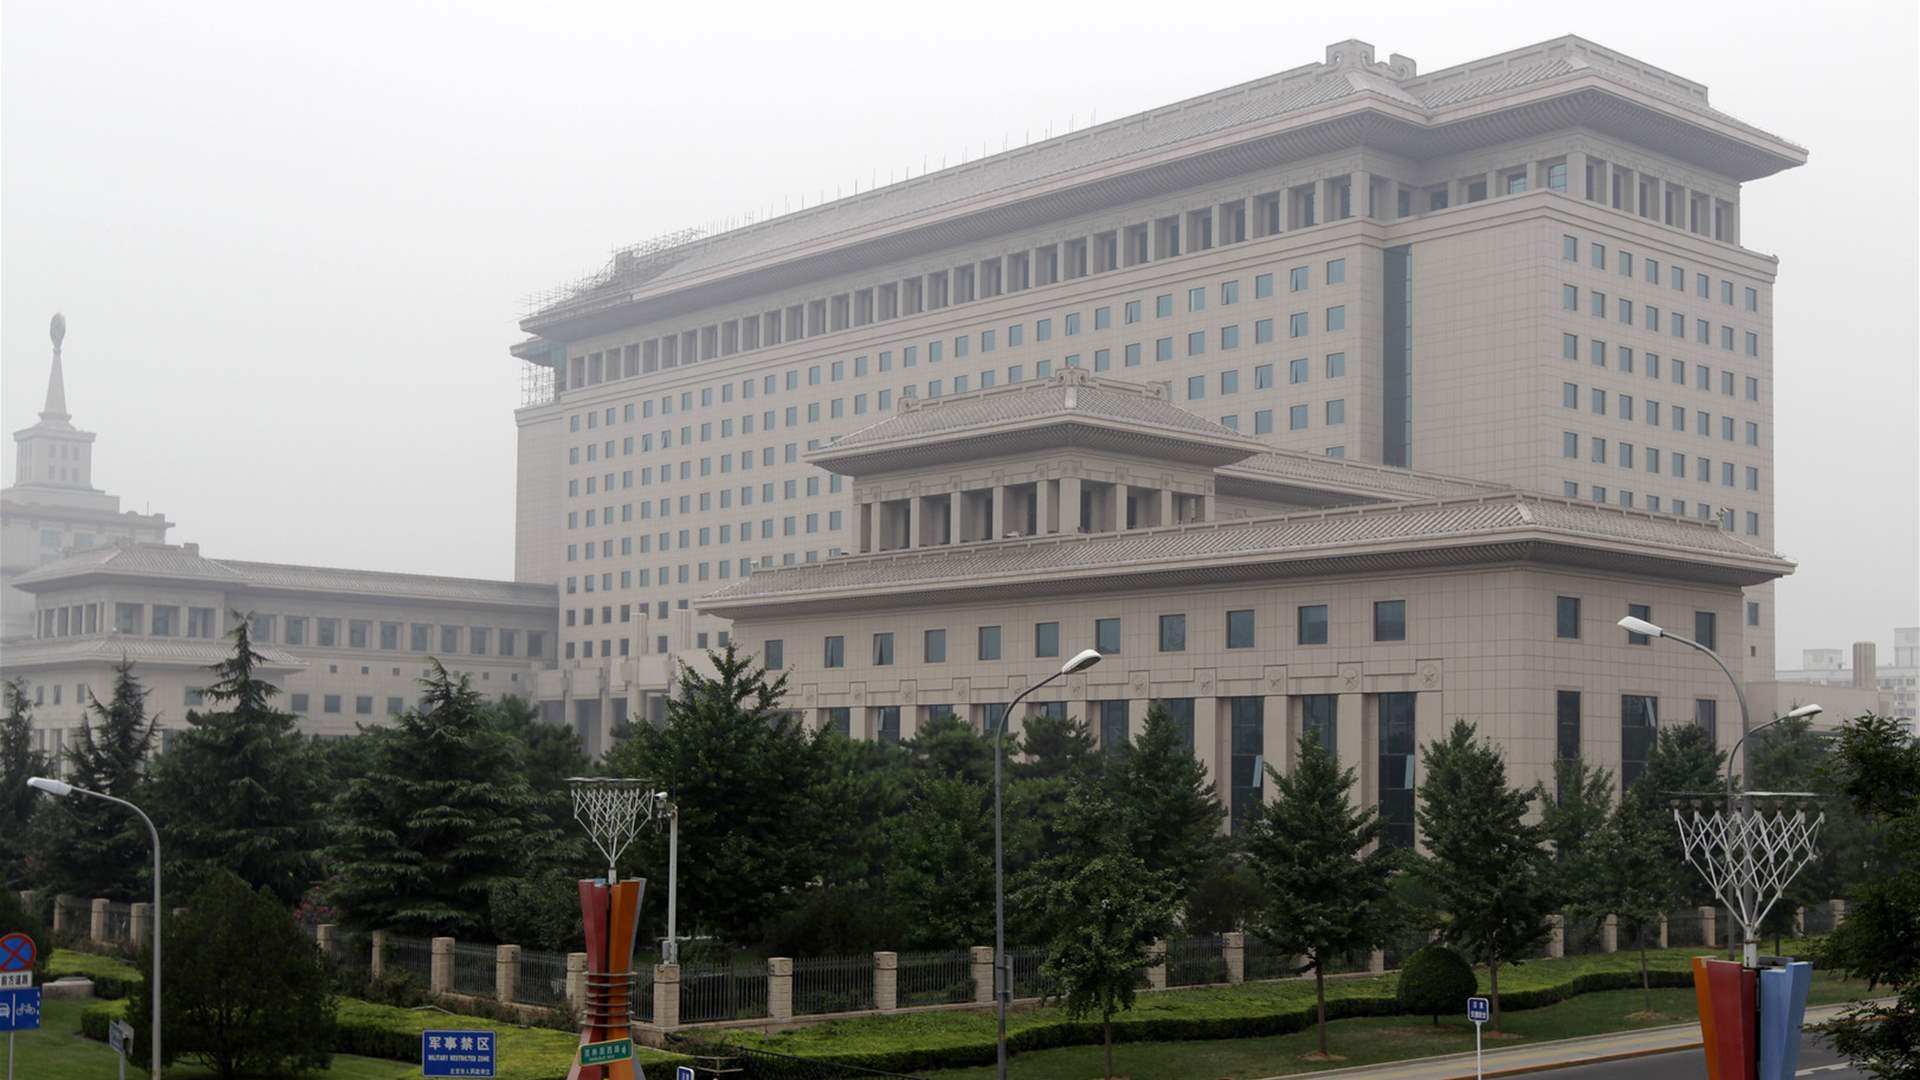  وزارة الدفاع الصينية: الصين ملتزمة بحل الخلافات بالحوار والتشاور